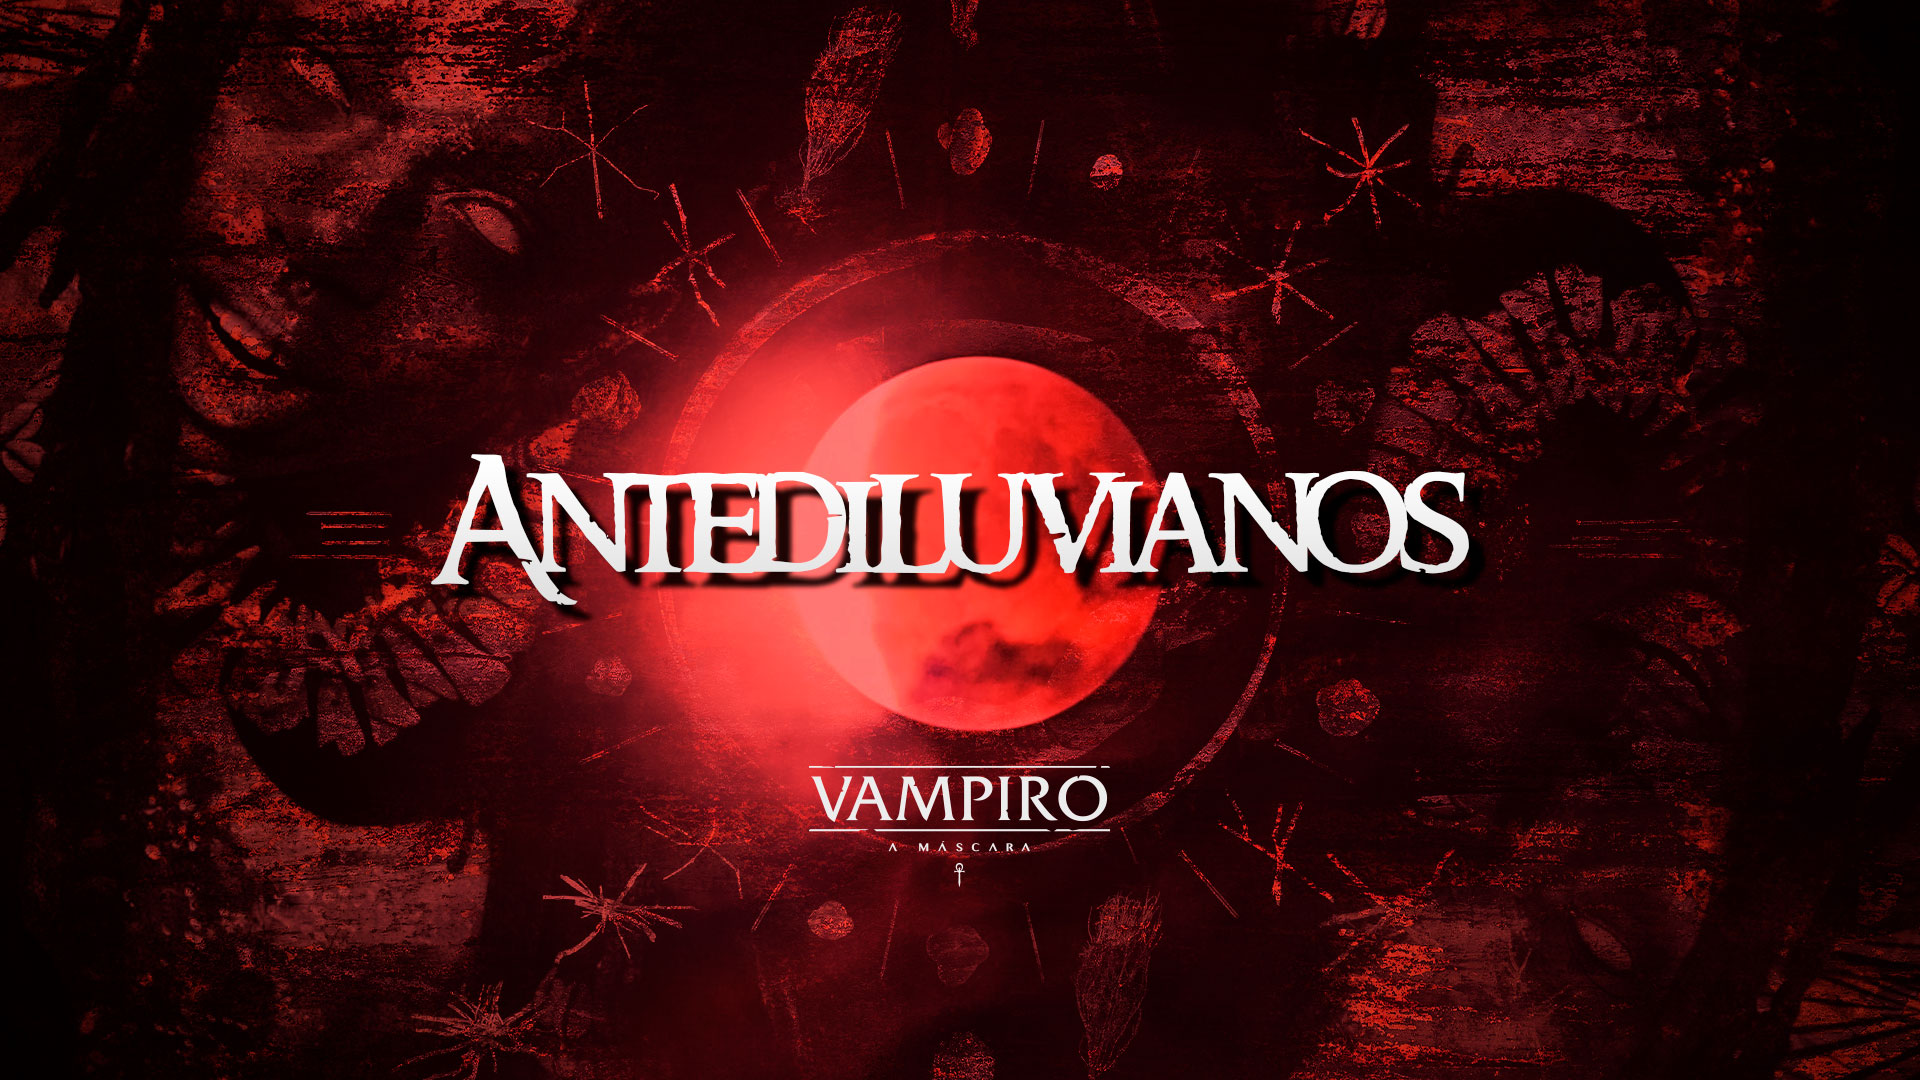 Antediluvianos – Dicas de Vampiro: A Máscara